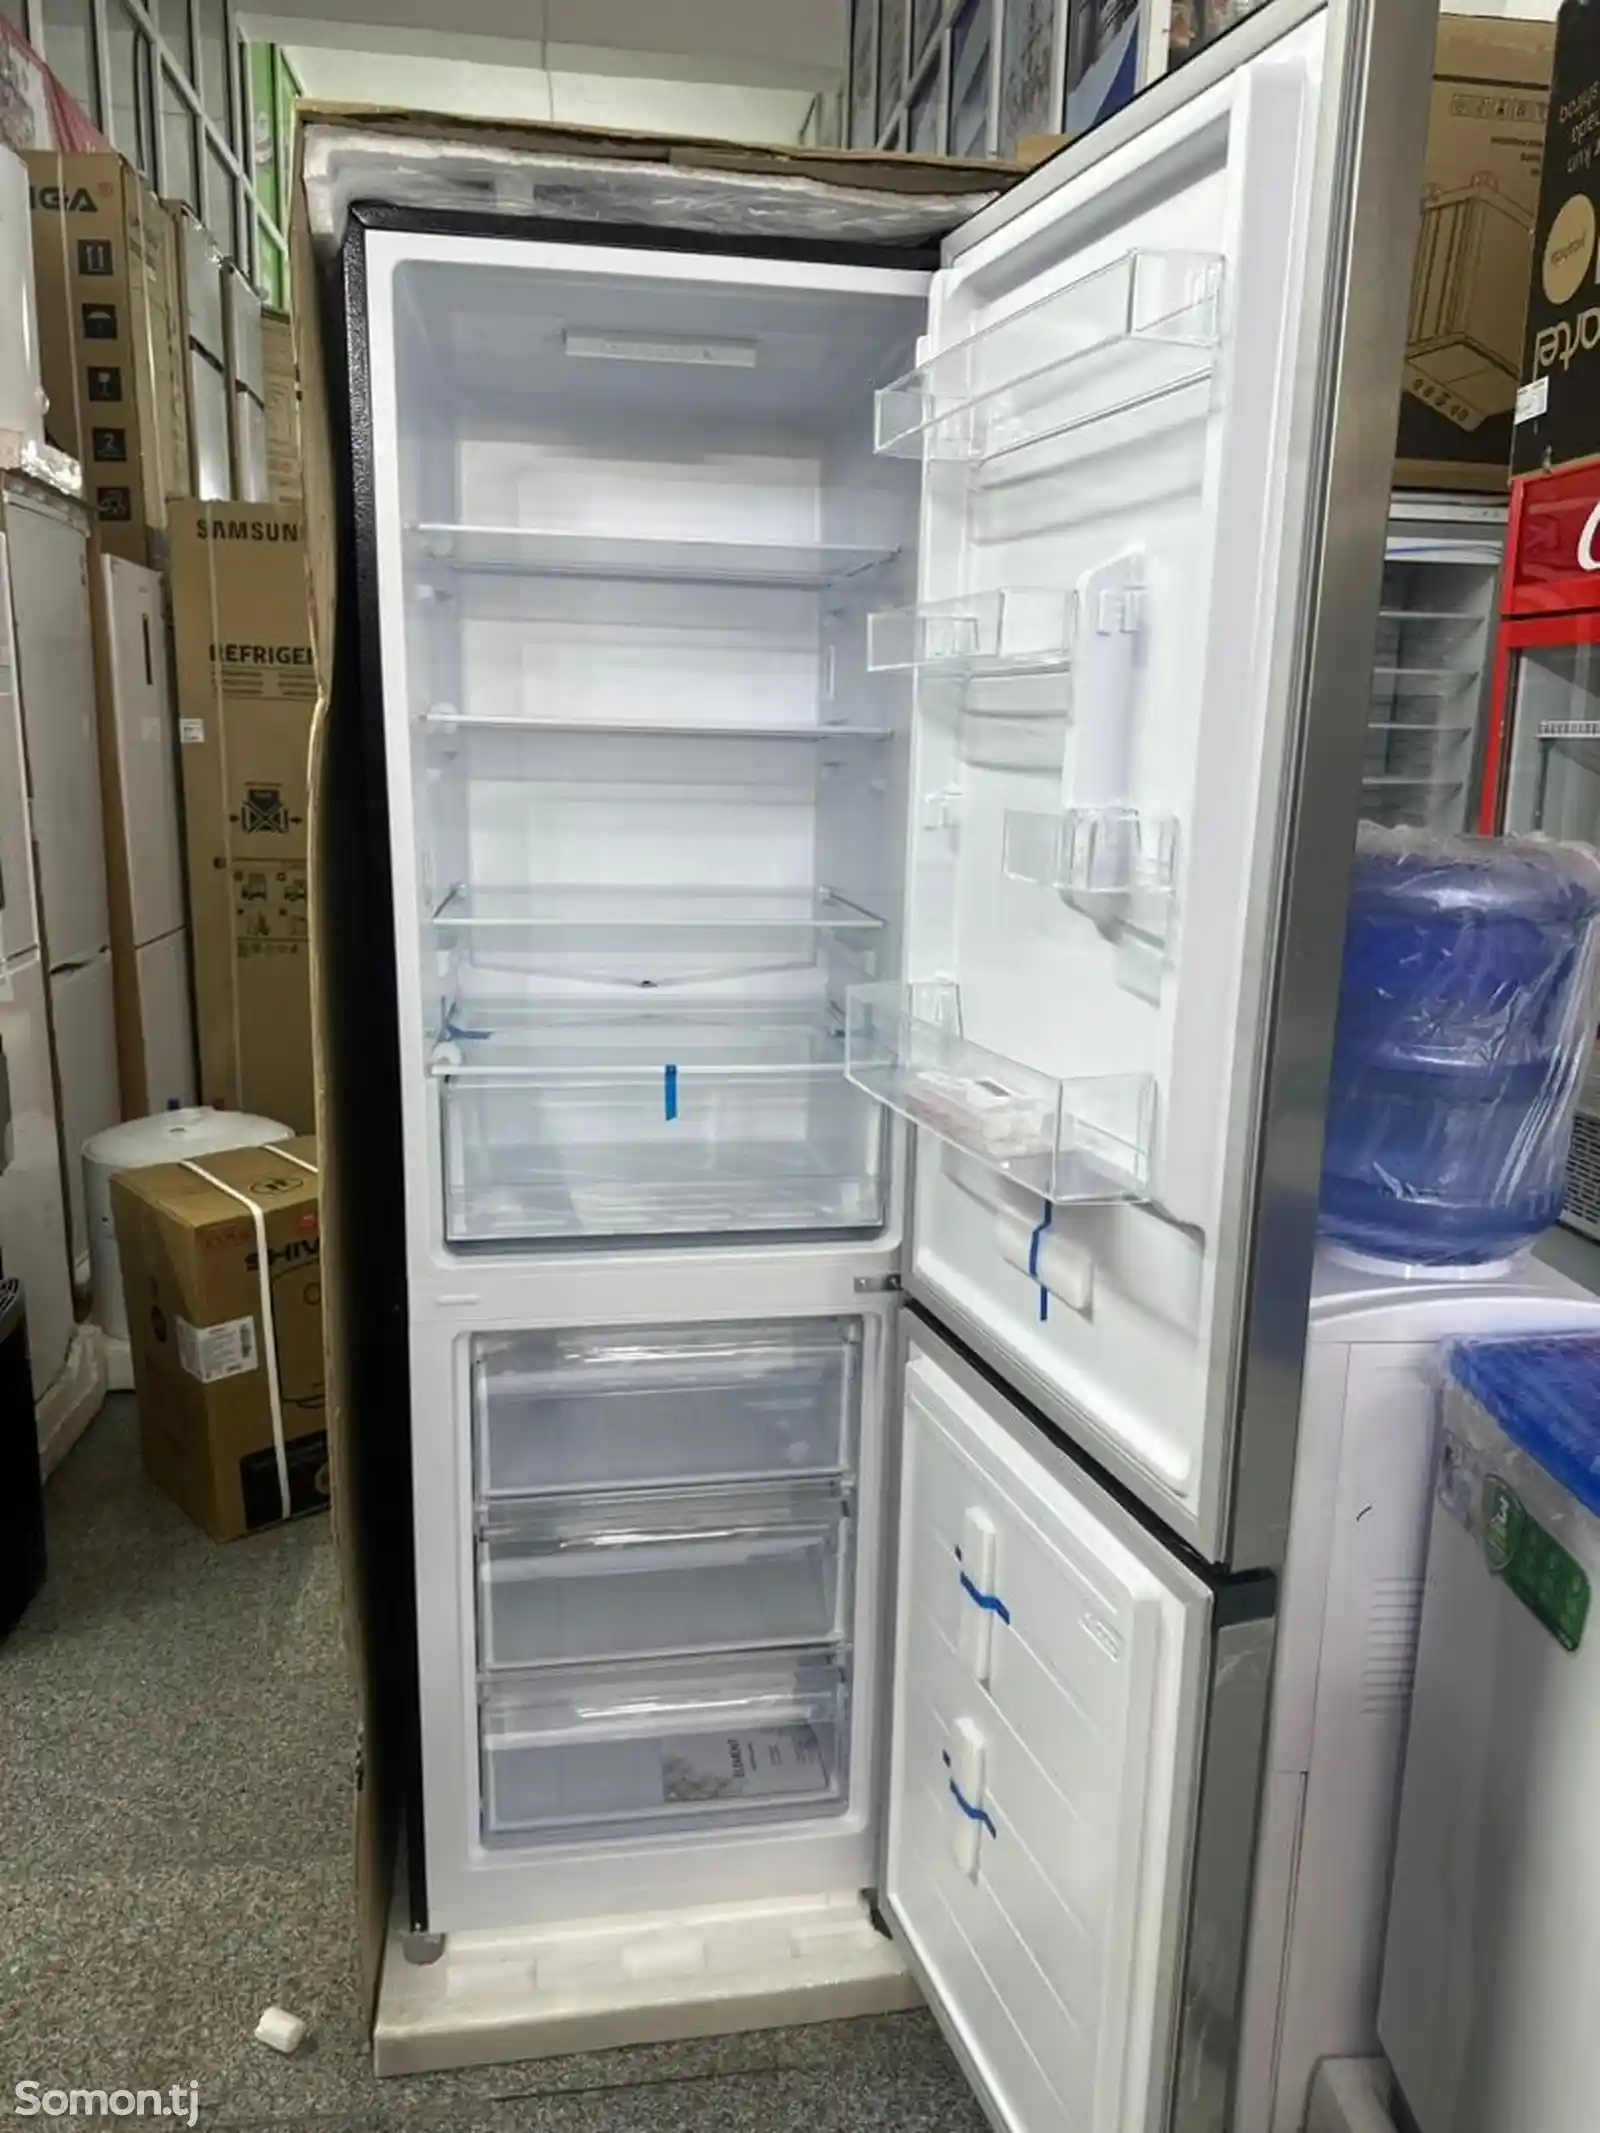 Холодильник Element-2